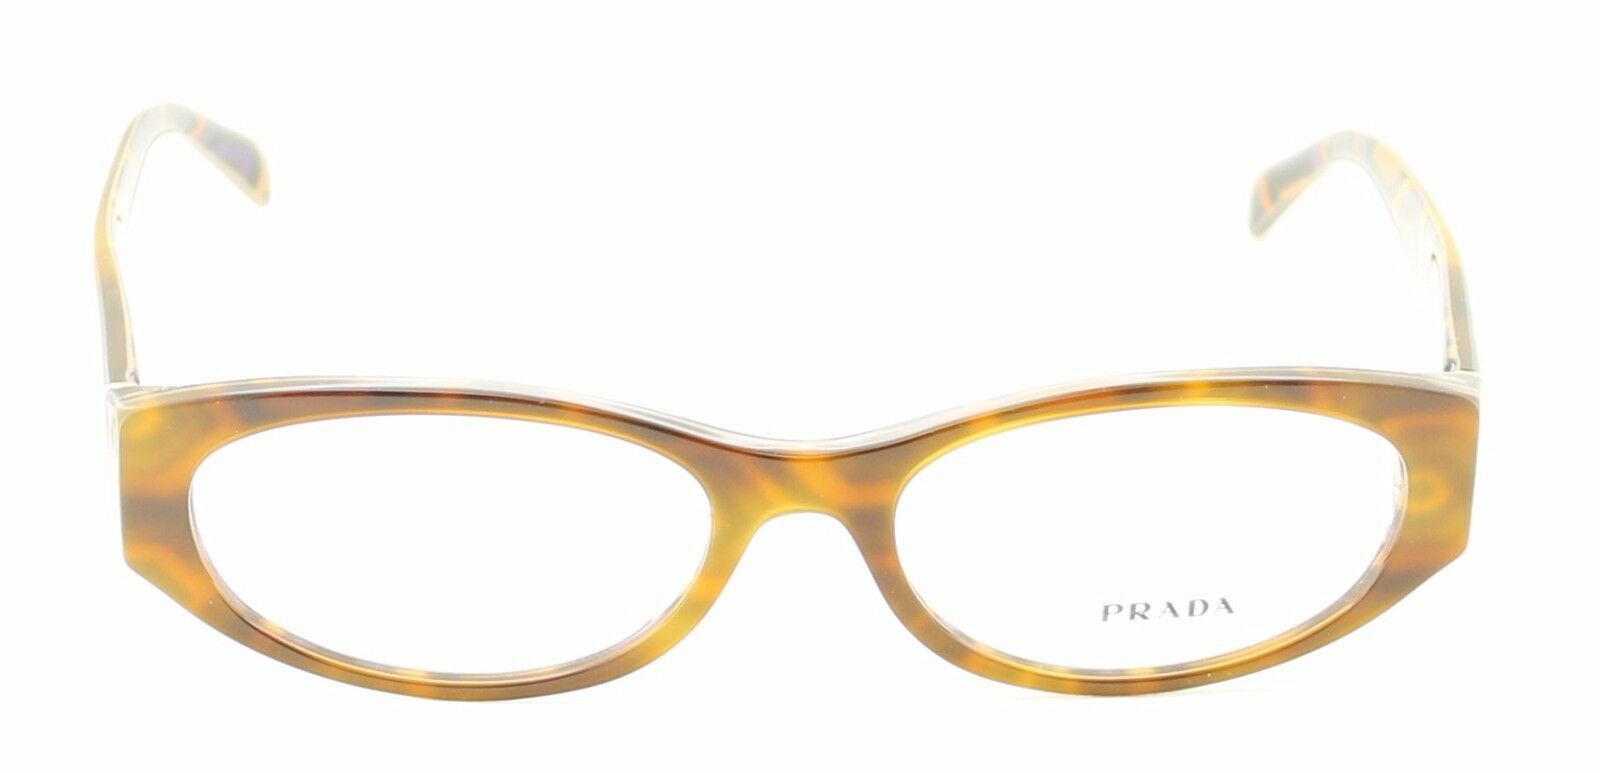 PRADA VPR 03P MAU-1O1 Eyewear FRAMES RX Optical Eyeglasses Glasses Italy-TRUSTED